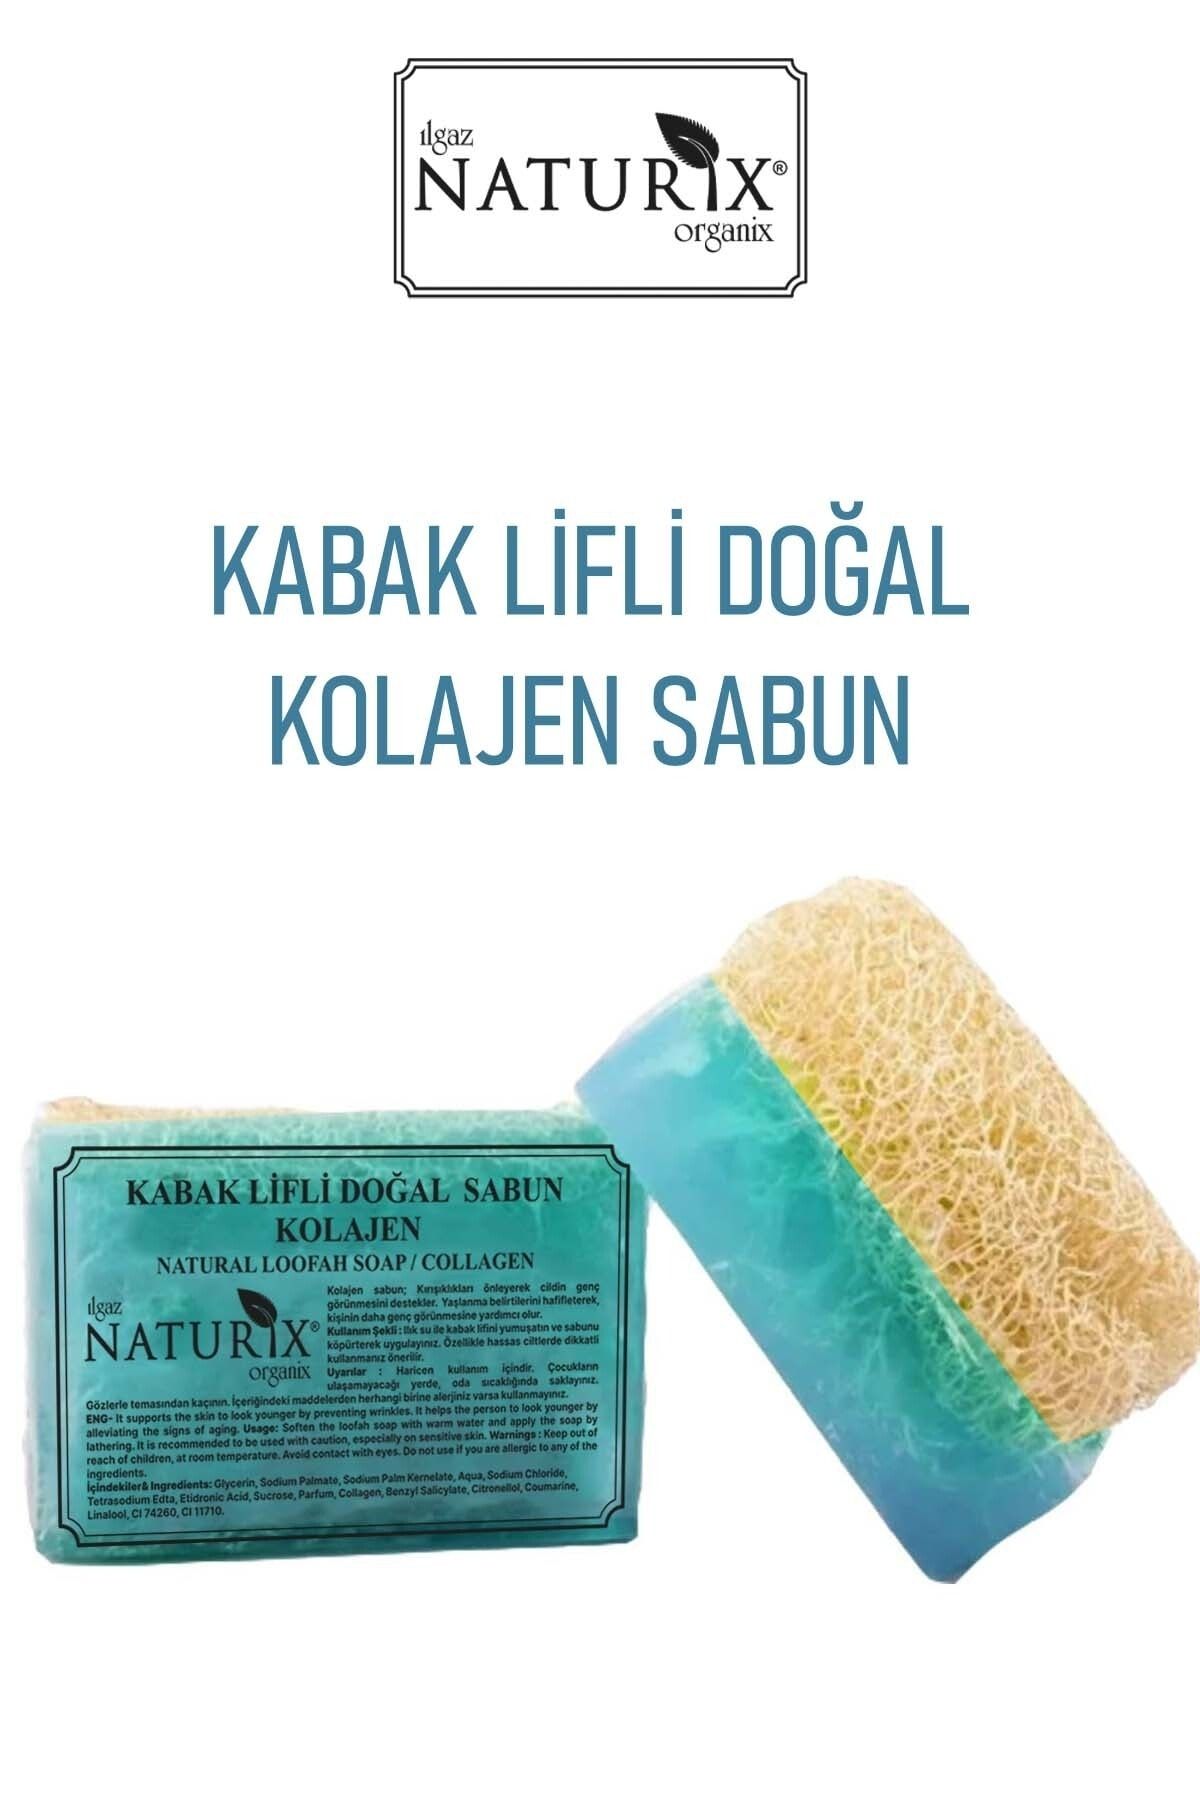 Naturix Doğal Kabak Lifli Kolajen Sabun Kırışıklık Önleyici Canlandırıcı Hücre Yenileyici Collagen Soap